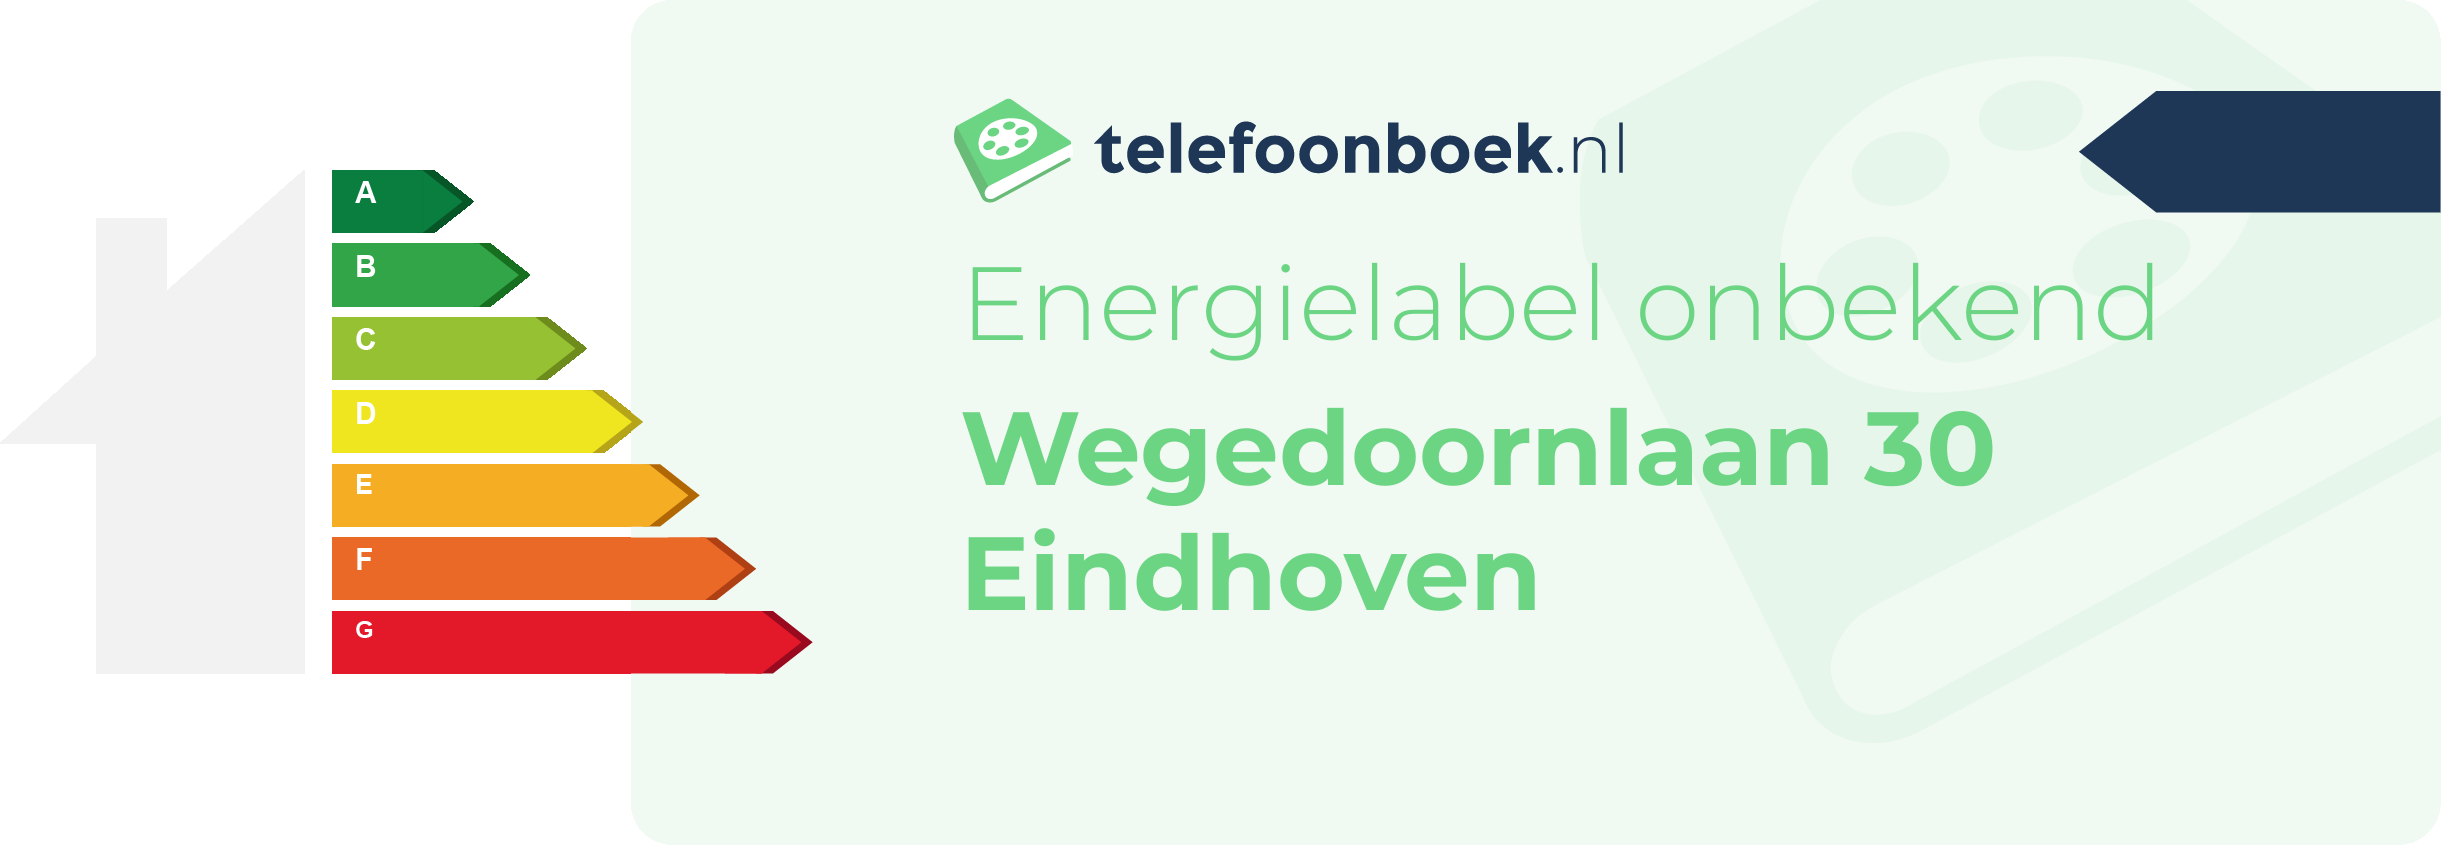 Energielabel Wegedoornlaan 30 Eindhoven